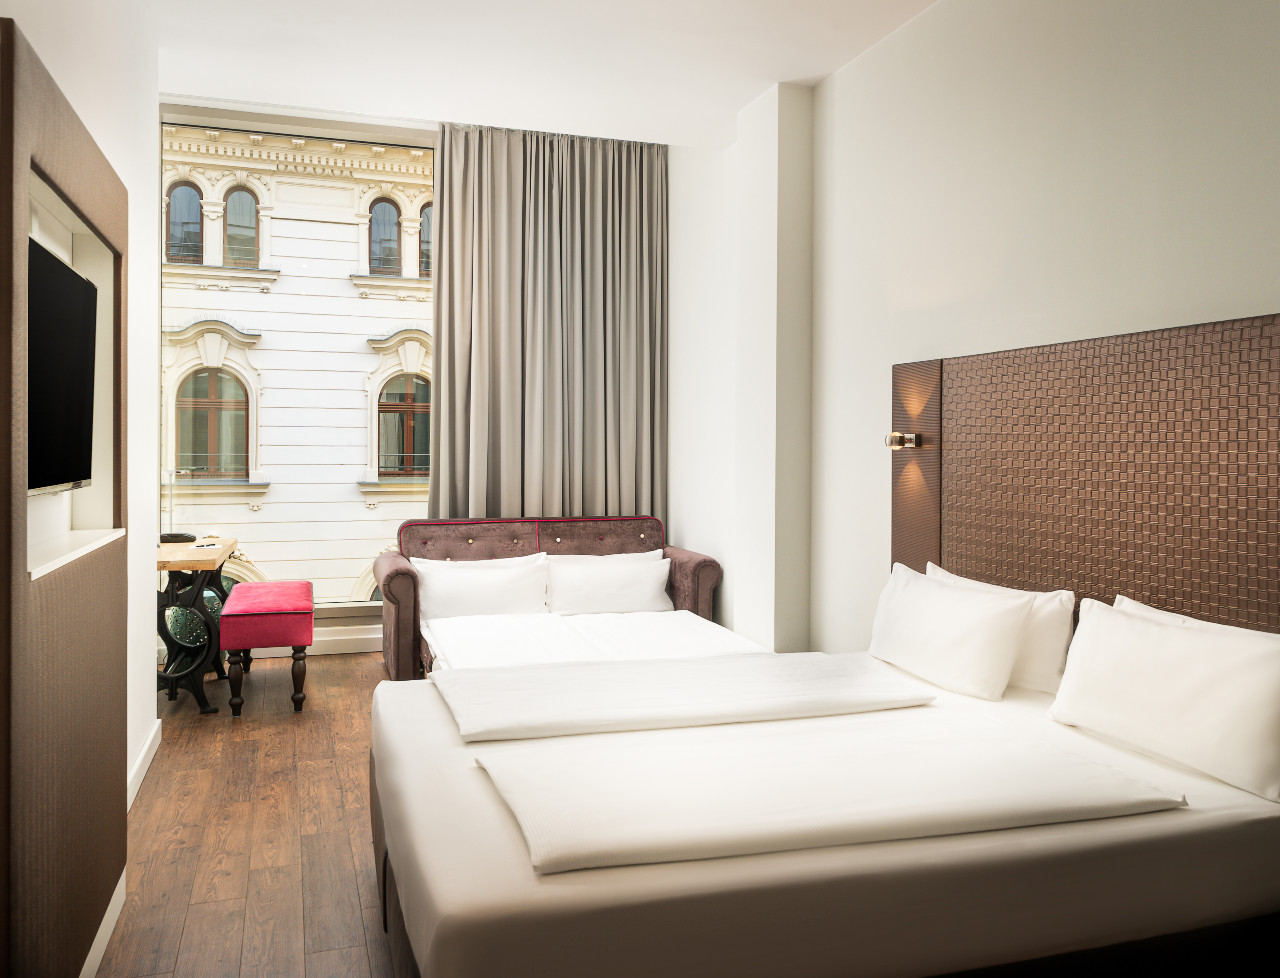 Modernes Design in einem Vierbettzimmer im elaya hotel leipzig city center